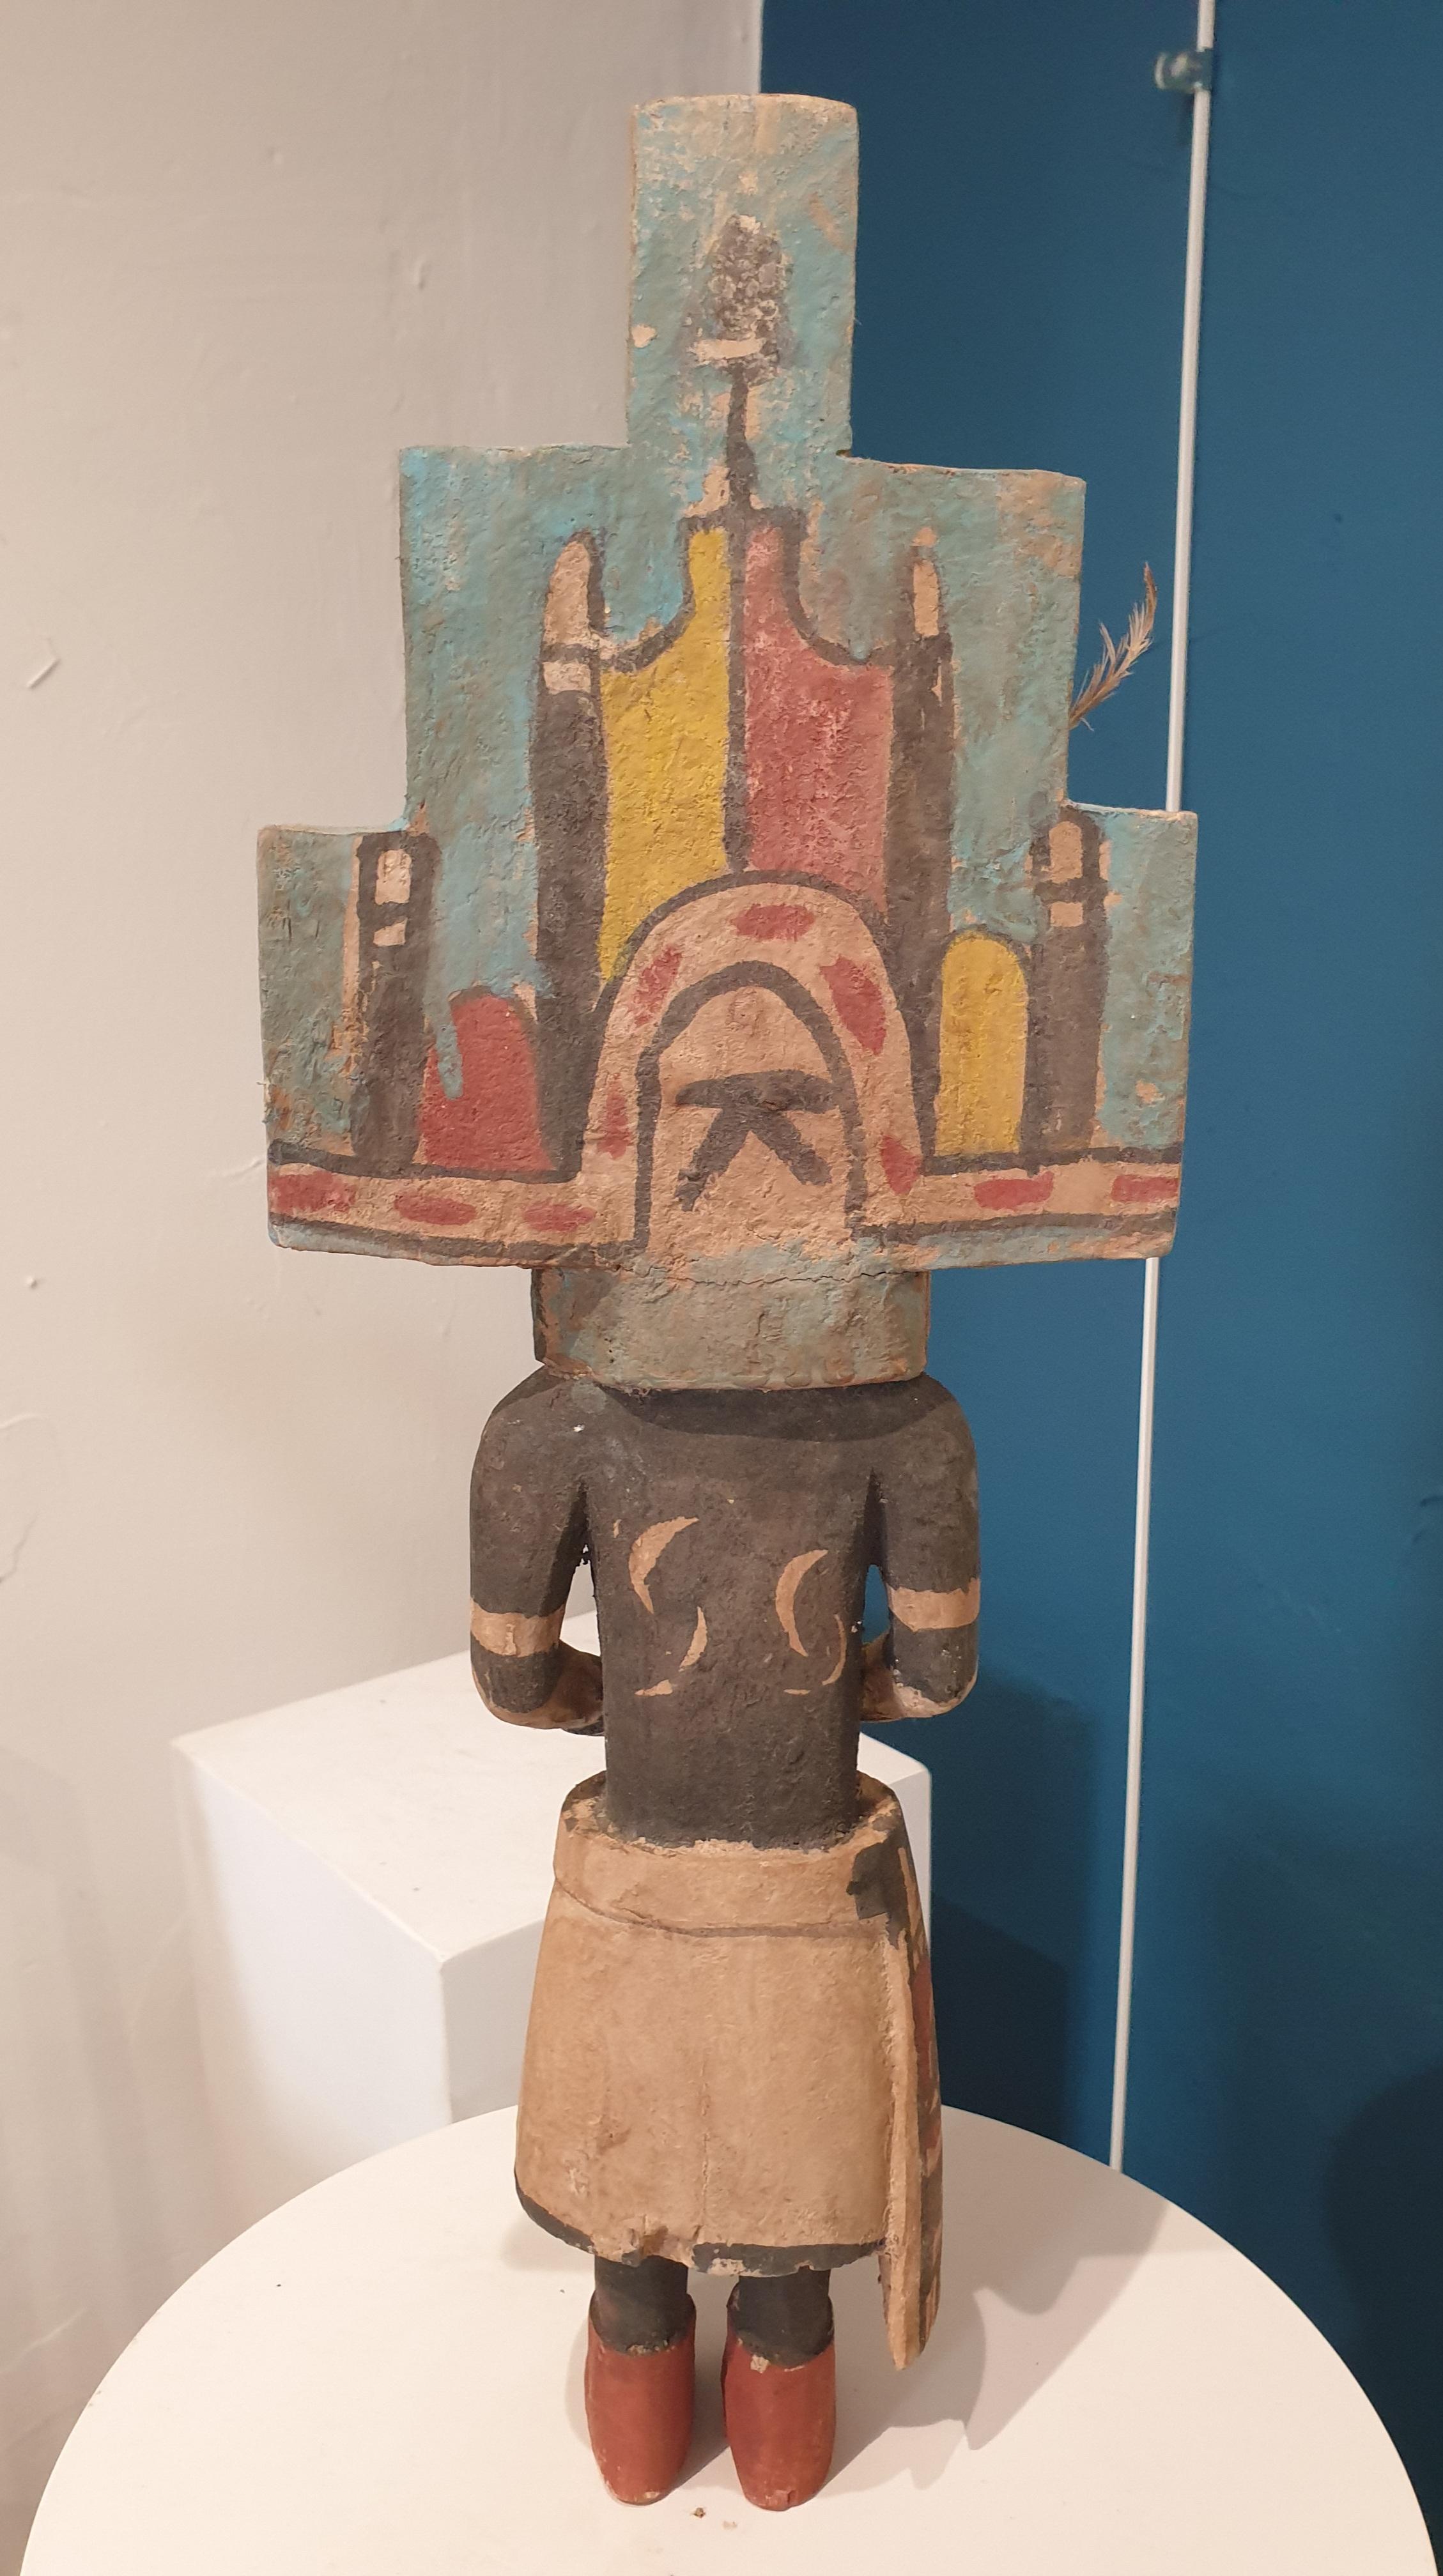 Effigie indigène nord-américaine en bois sculpté et peint, Hopi Katsina ou poupée Kachina. Elle fait partie d'un groupe de huit poupées, toutes disponibles sur 1stdibs.

Les poupées Hopi Katsina sont des effigies en bois des Katsinam (au pluriel),